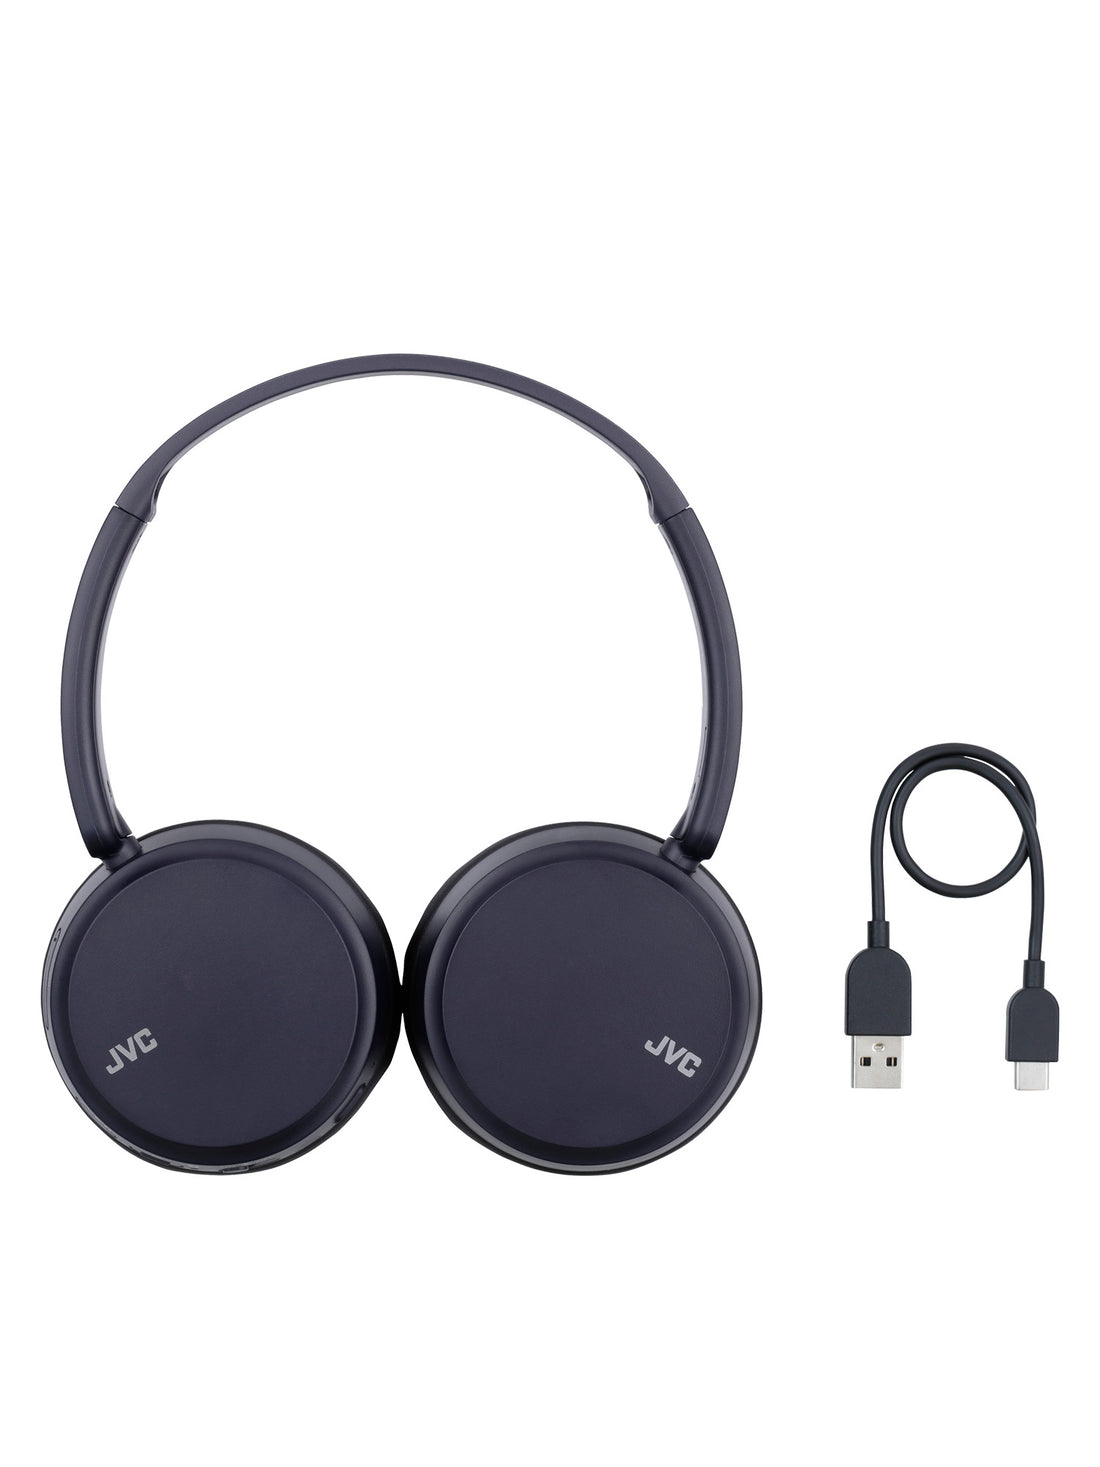 HA-Z37W-A in blue wireless bluetooth headphones usb charging lead